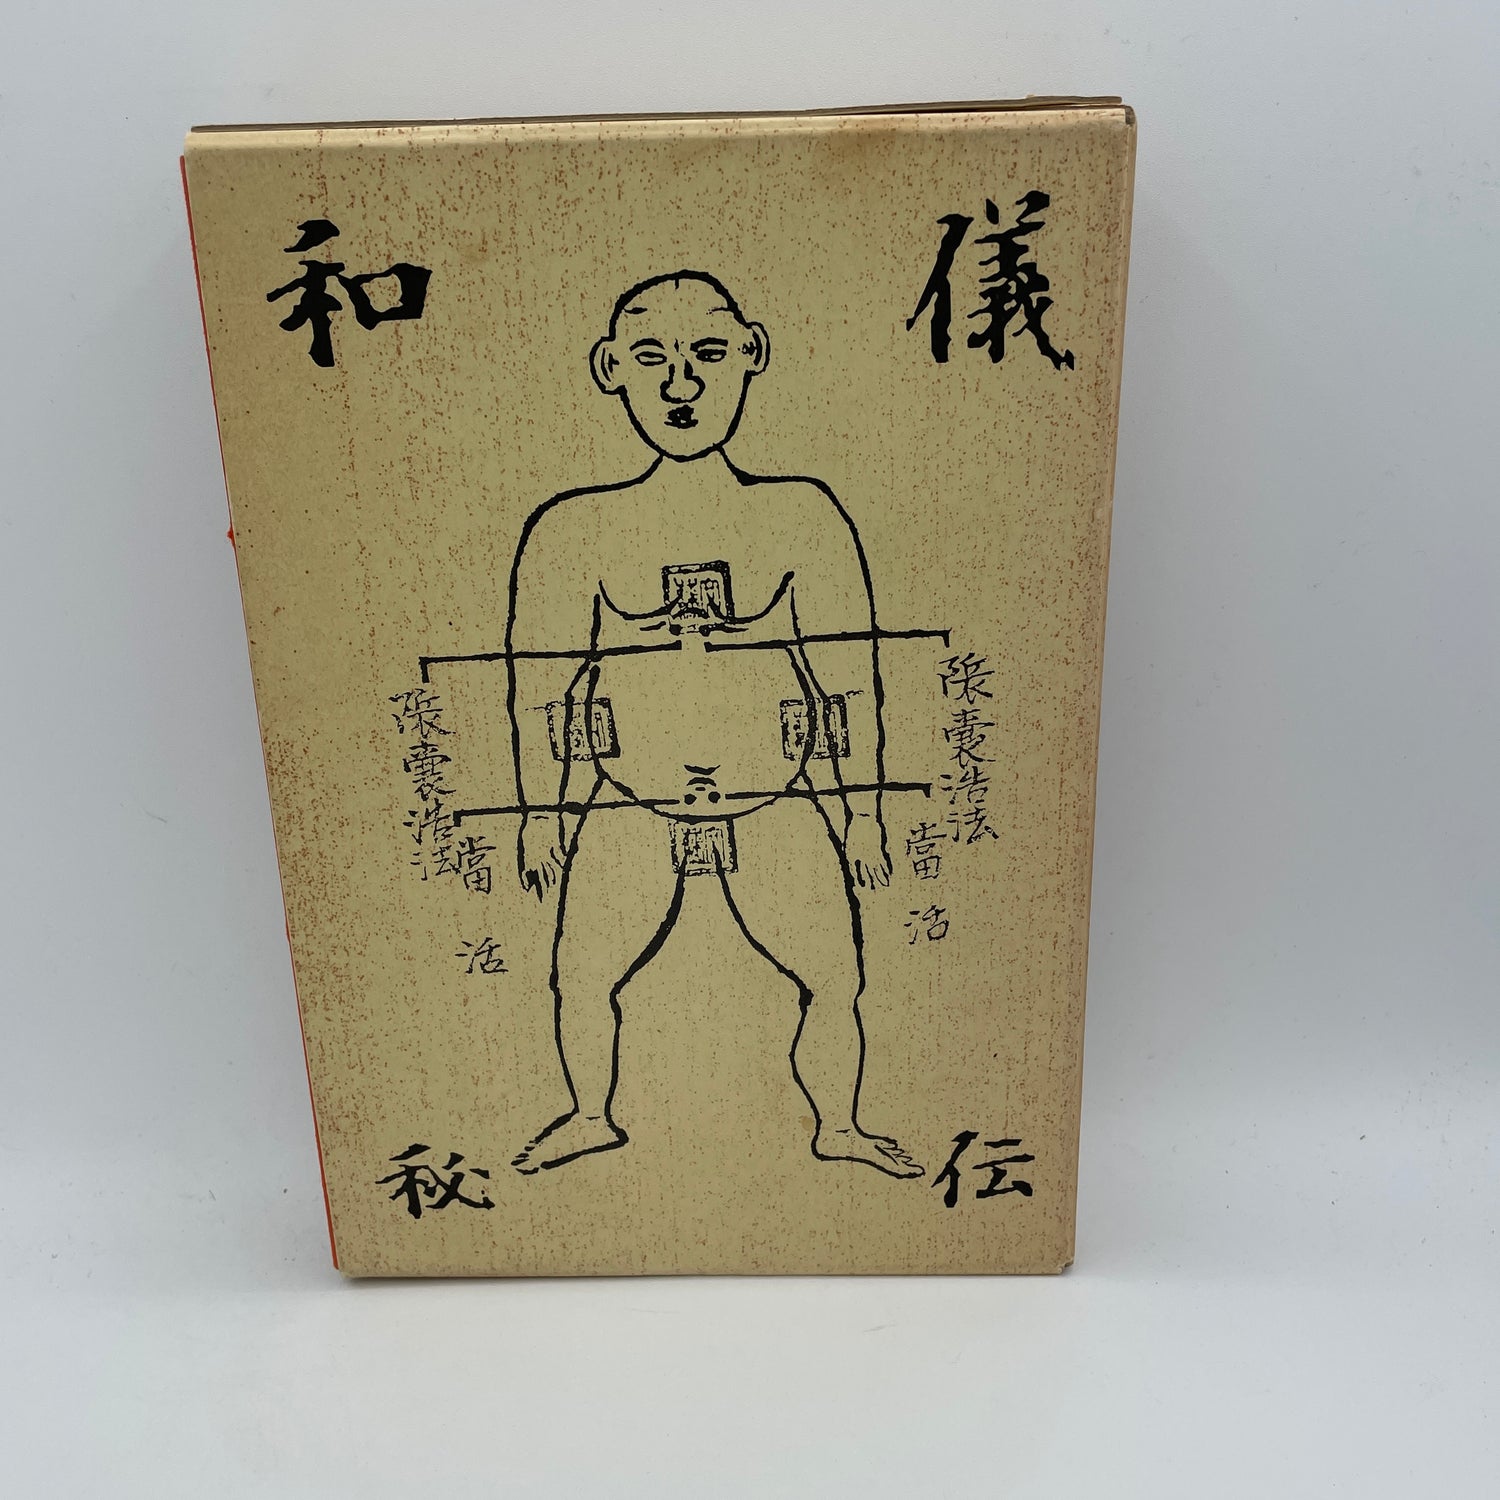 Yairagi Koryu Jujutsu Research Journal 1-8 Box Set (Preowned)